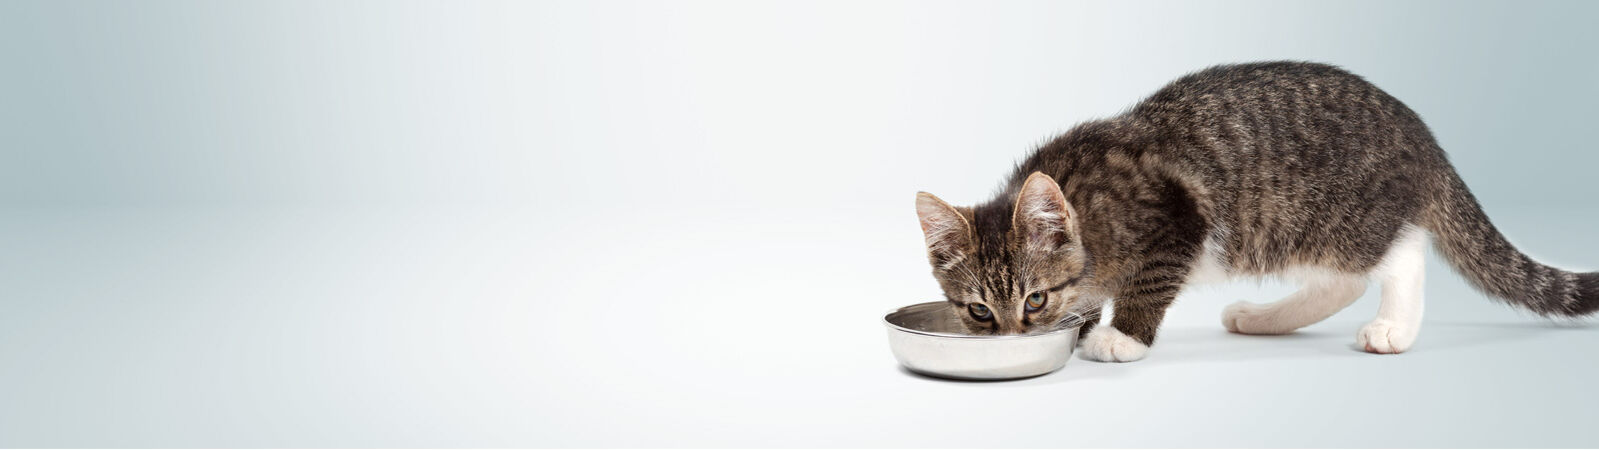 Eine Katze trinkt viel Wasser aus einem Napf.